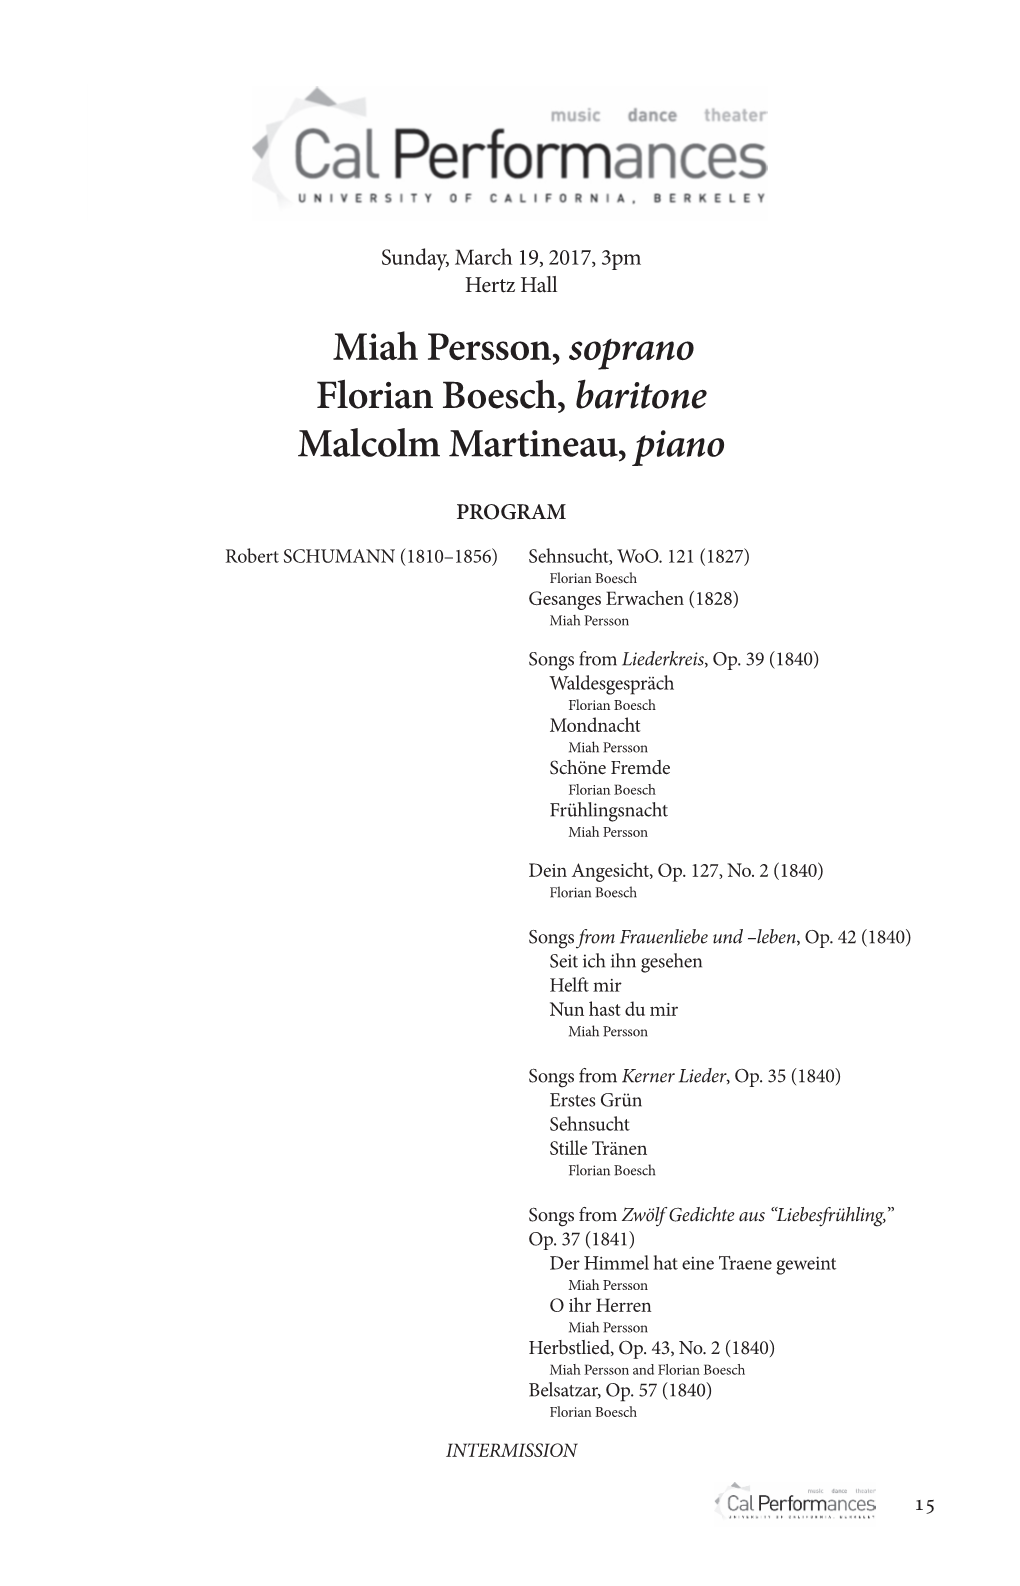 Miah Persson, Soprano Florian Boesch, Baritone Malcolm Martineau, Piano